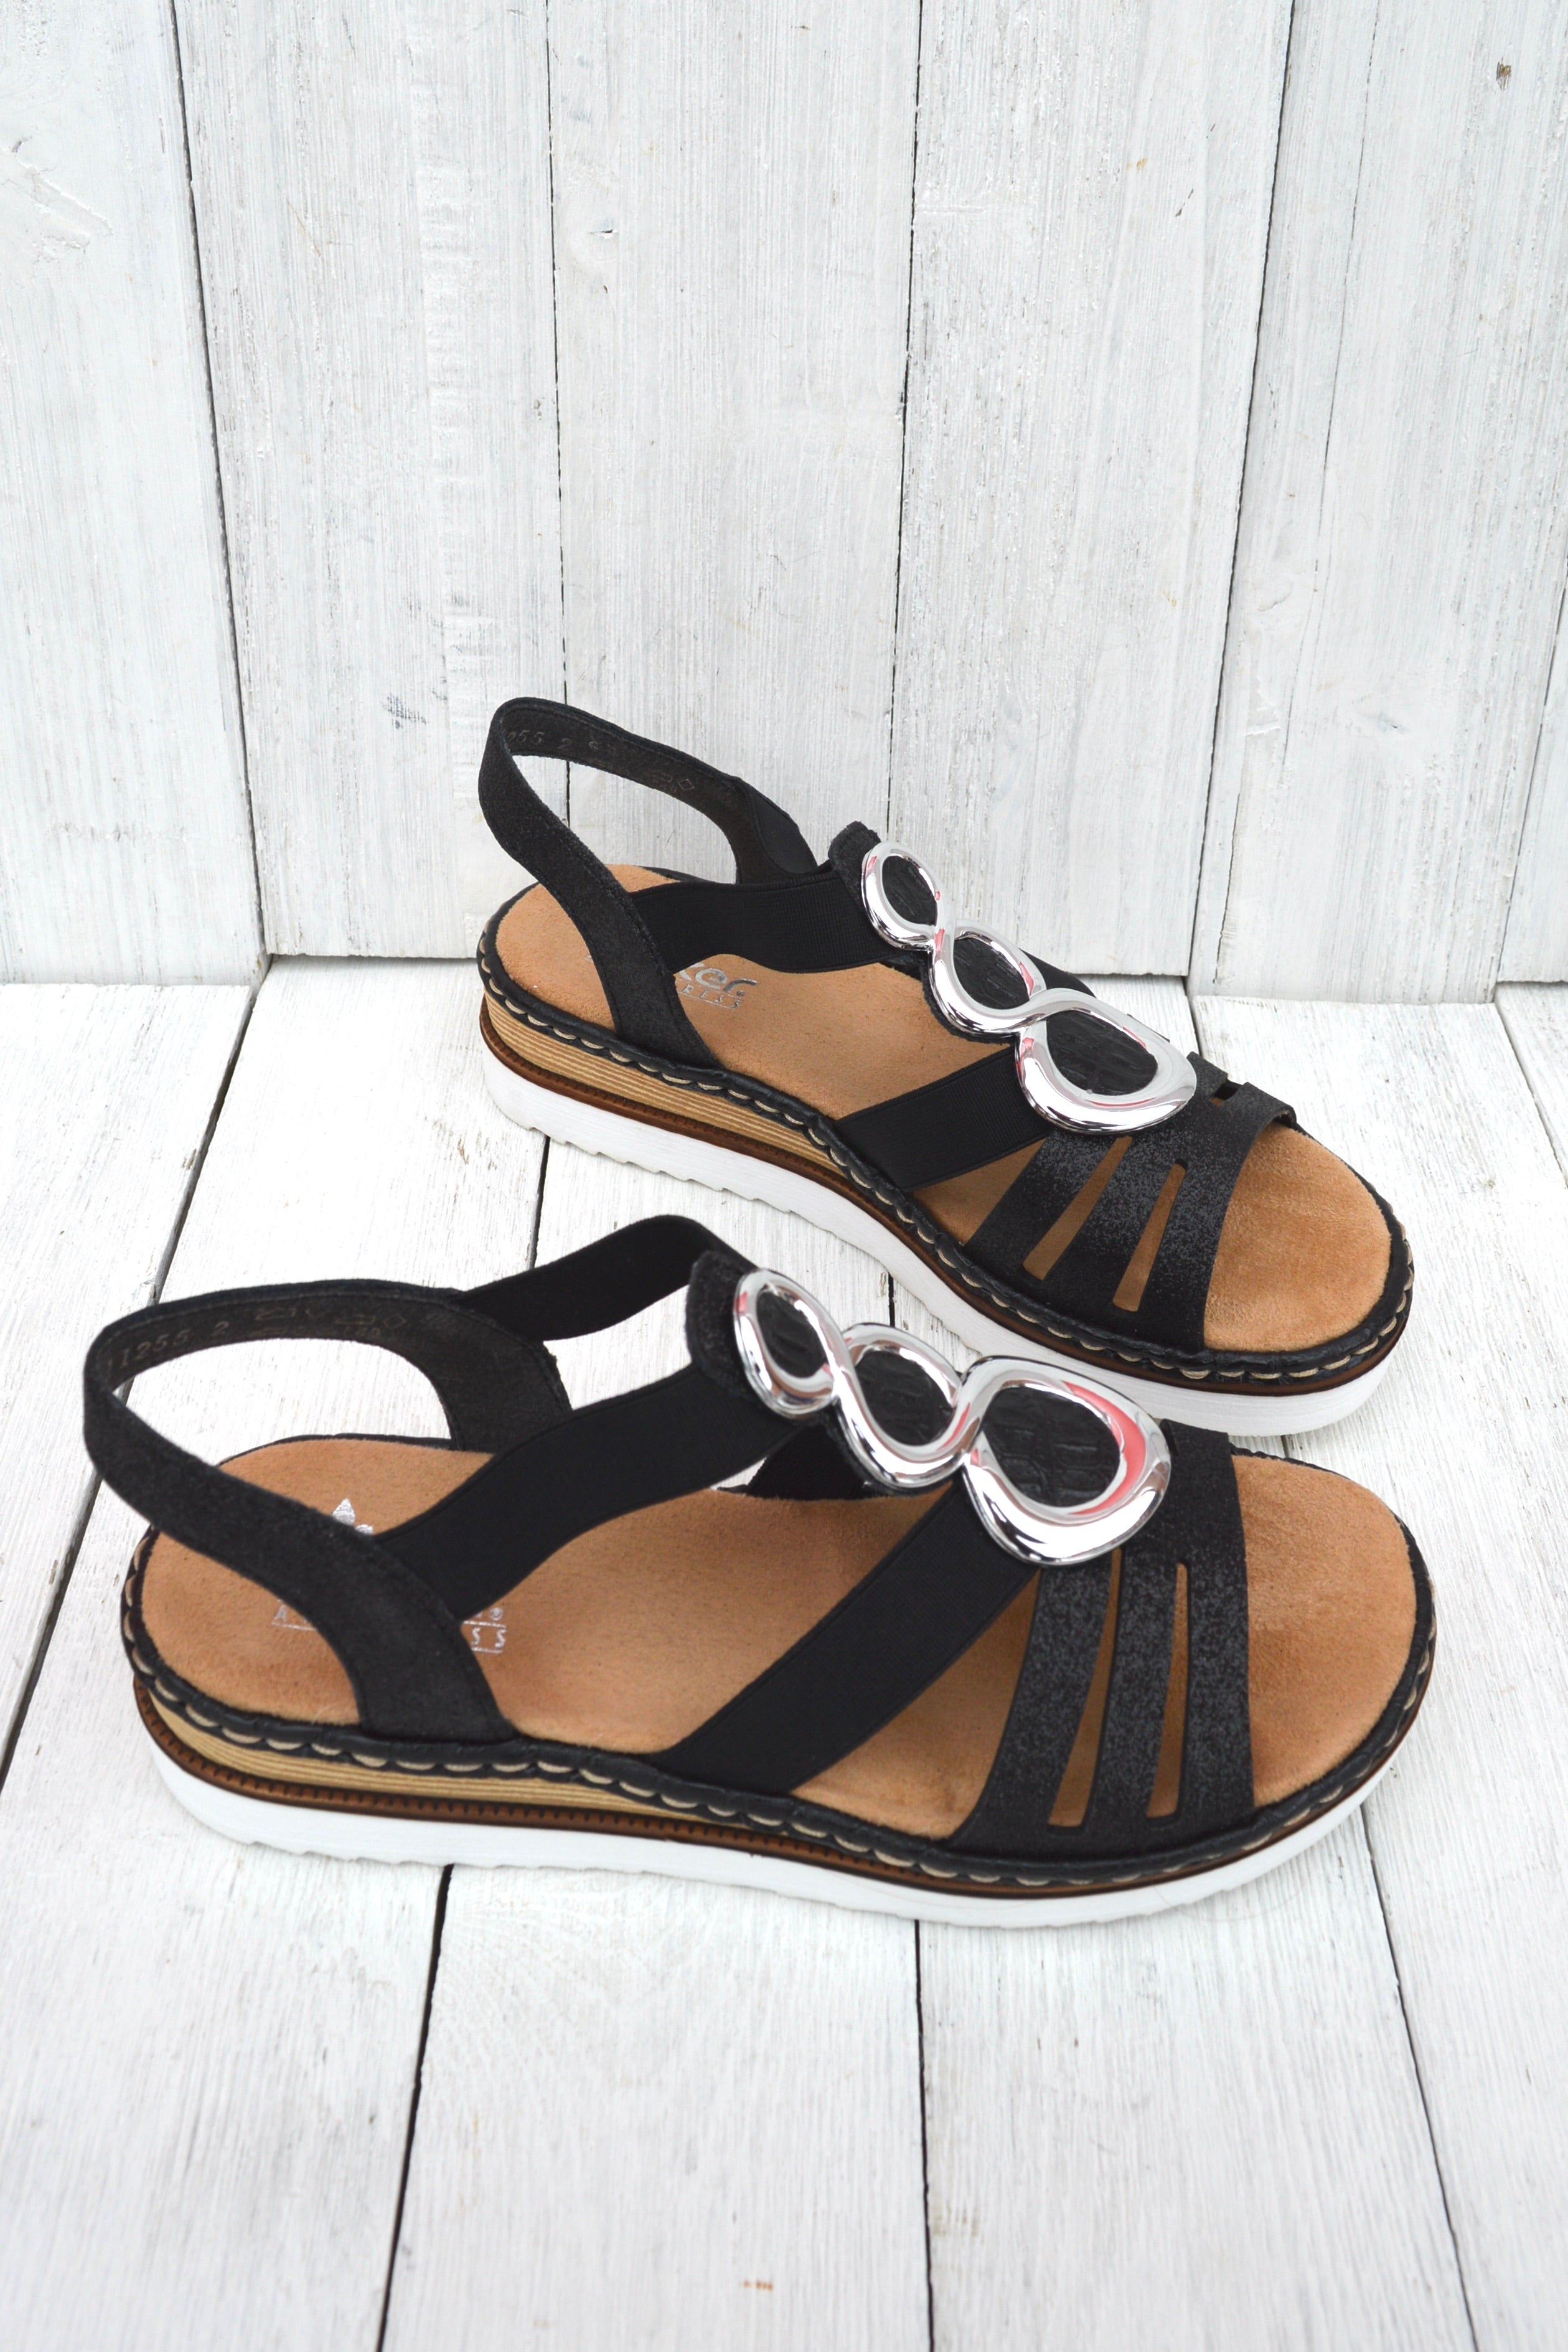 Rieker 679L4-00 Sandals Canada – Shoes for Soul